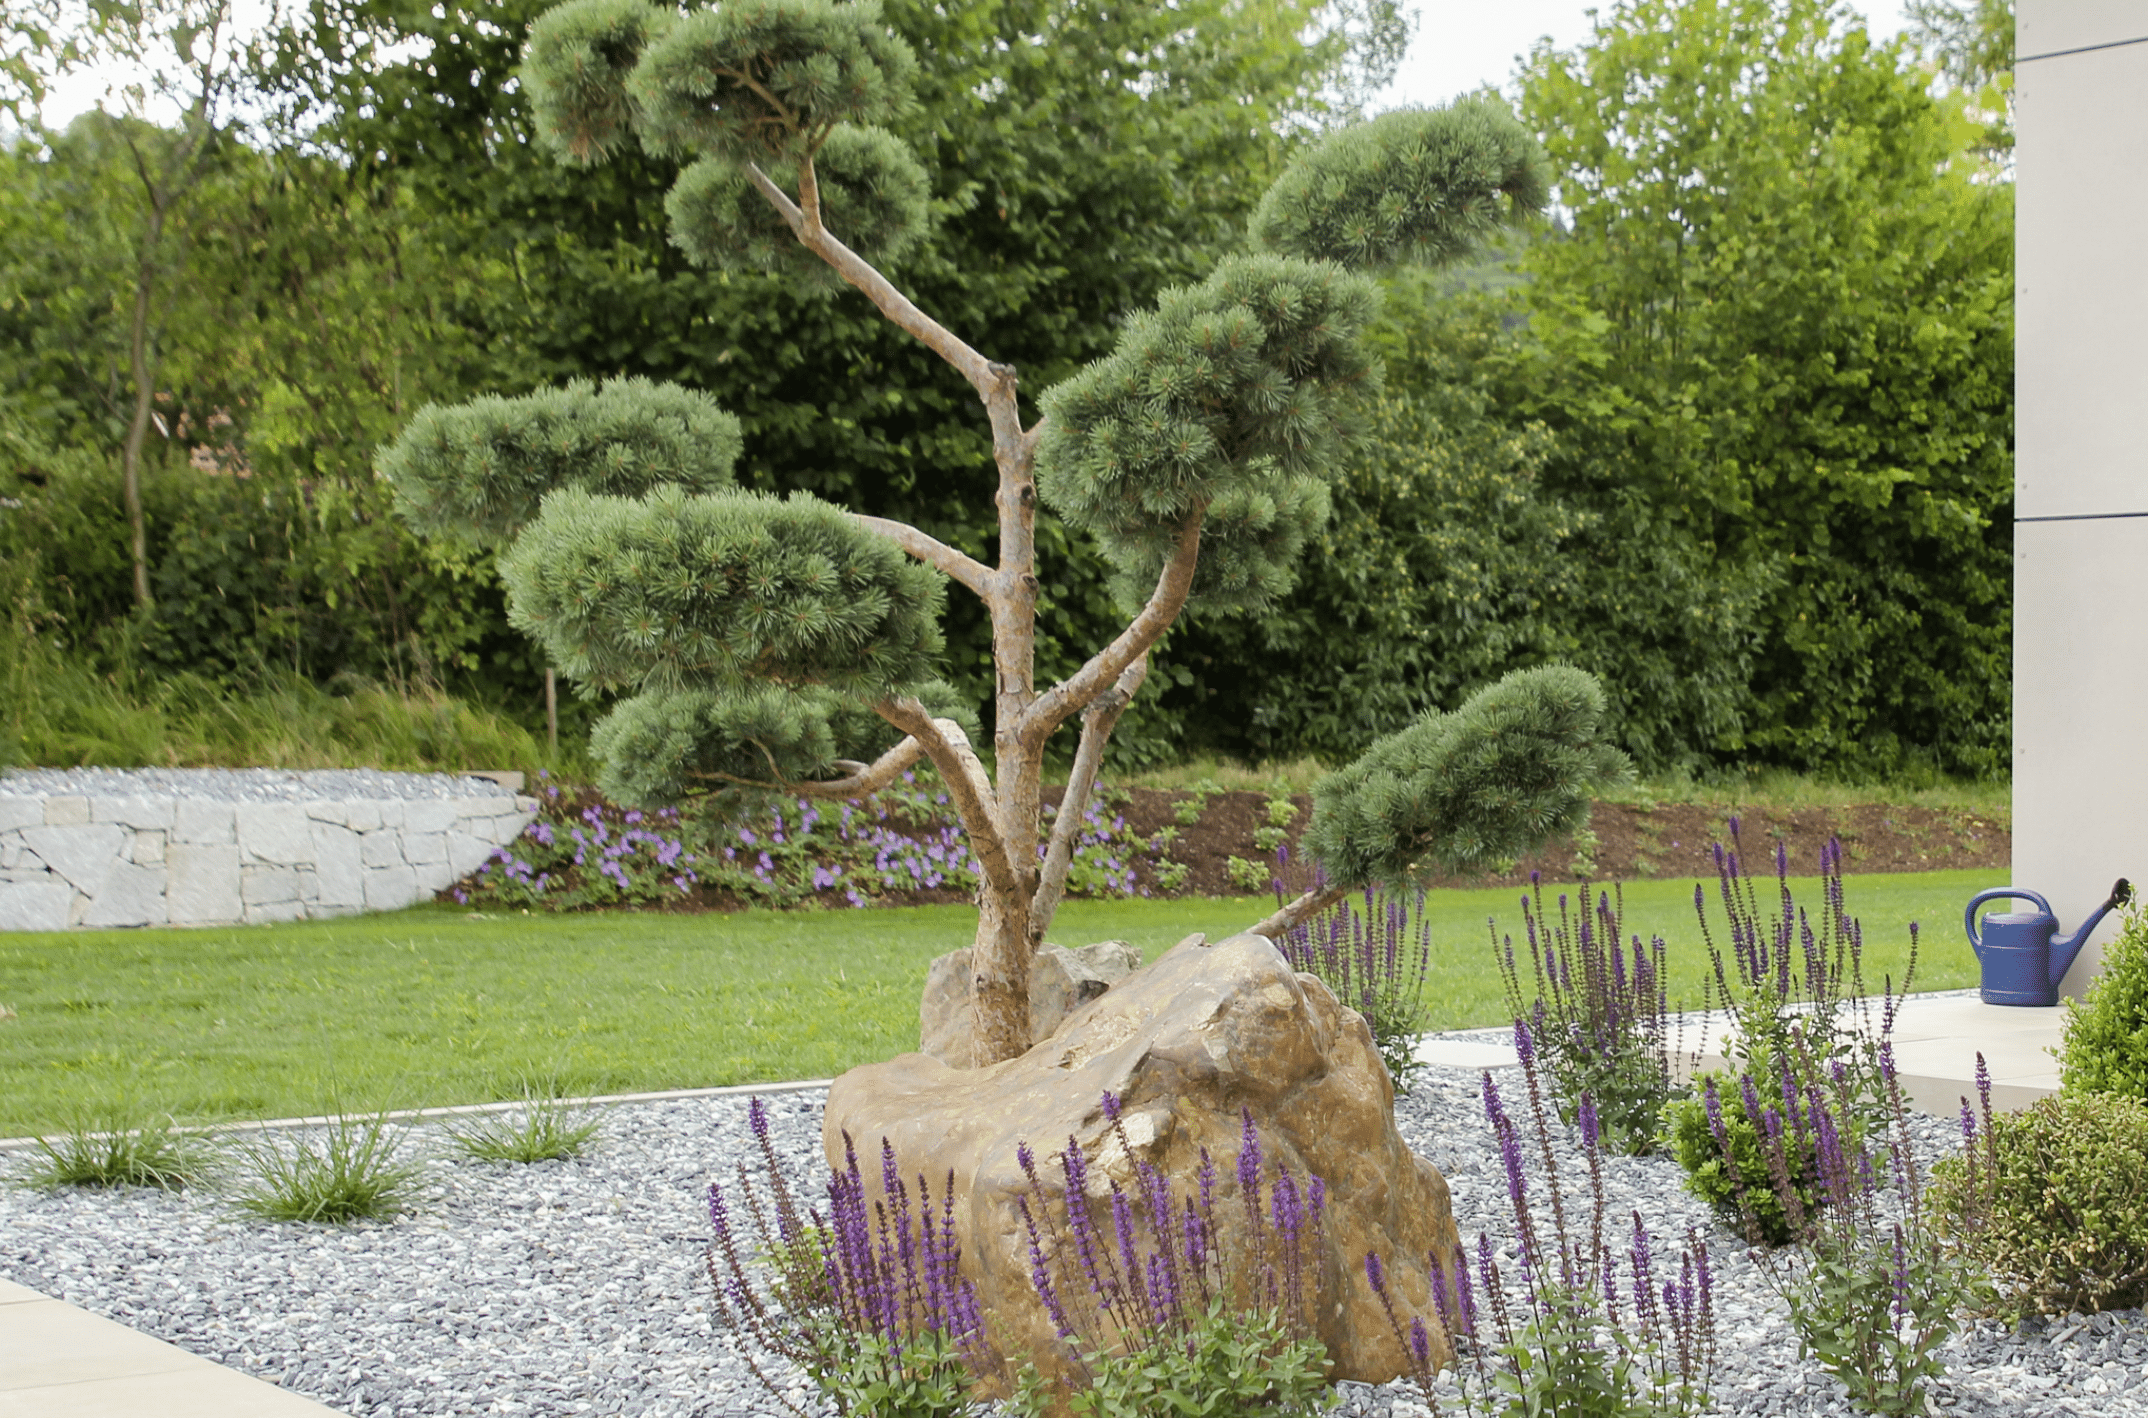 Gartenbau Schmid zeigt einen in Form gebrachten Baum inmitten eines Blumenbeets, welches mit Steinen bedeckt wurde.